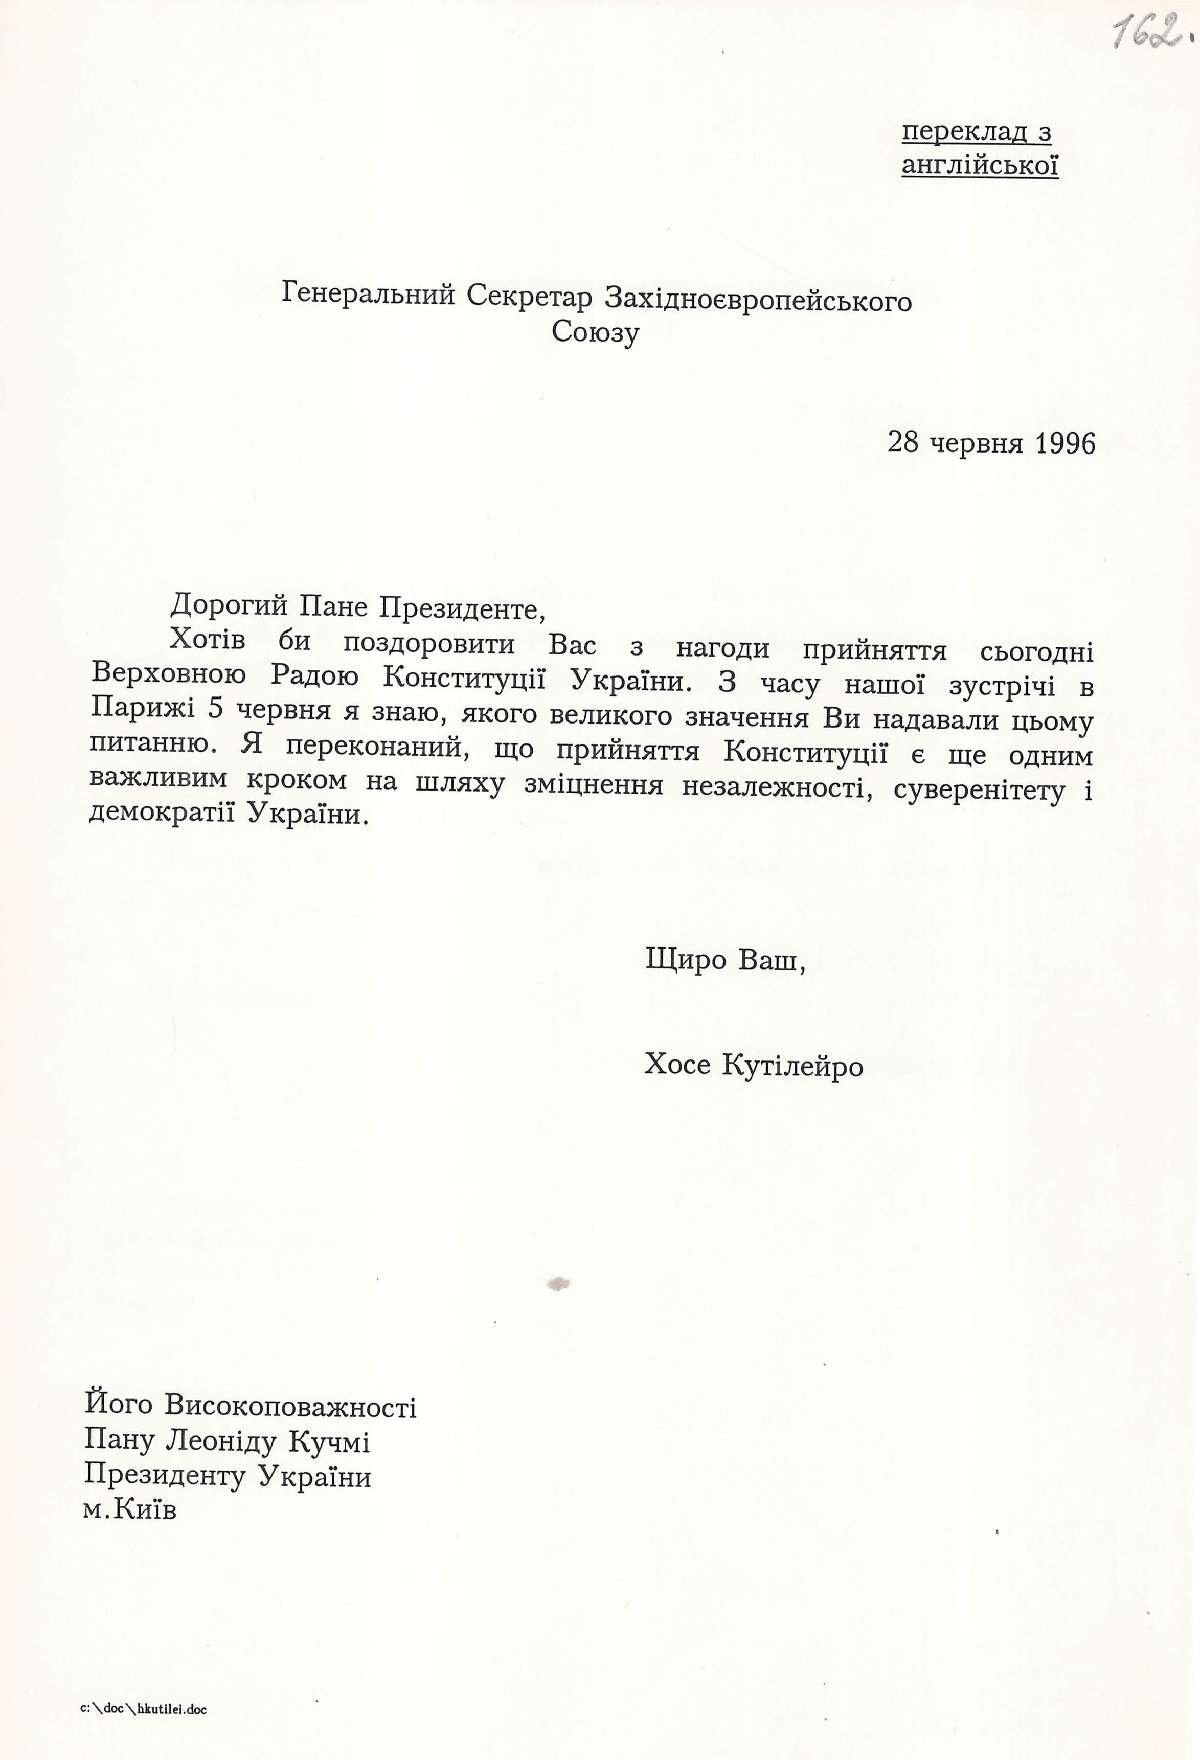 Привітання від Генерального Секретаря Західноєвропейського Союзу Президента України з прийняттям Конституції України. 28 червня 1996 р.